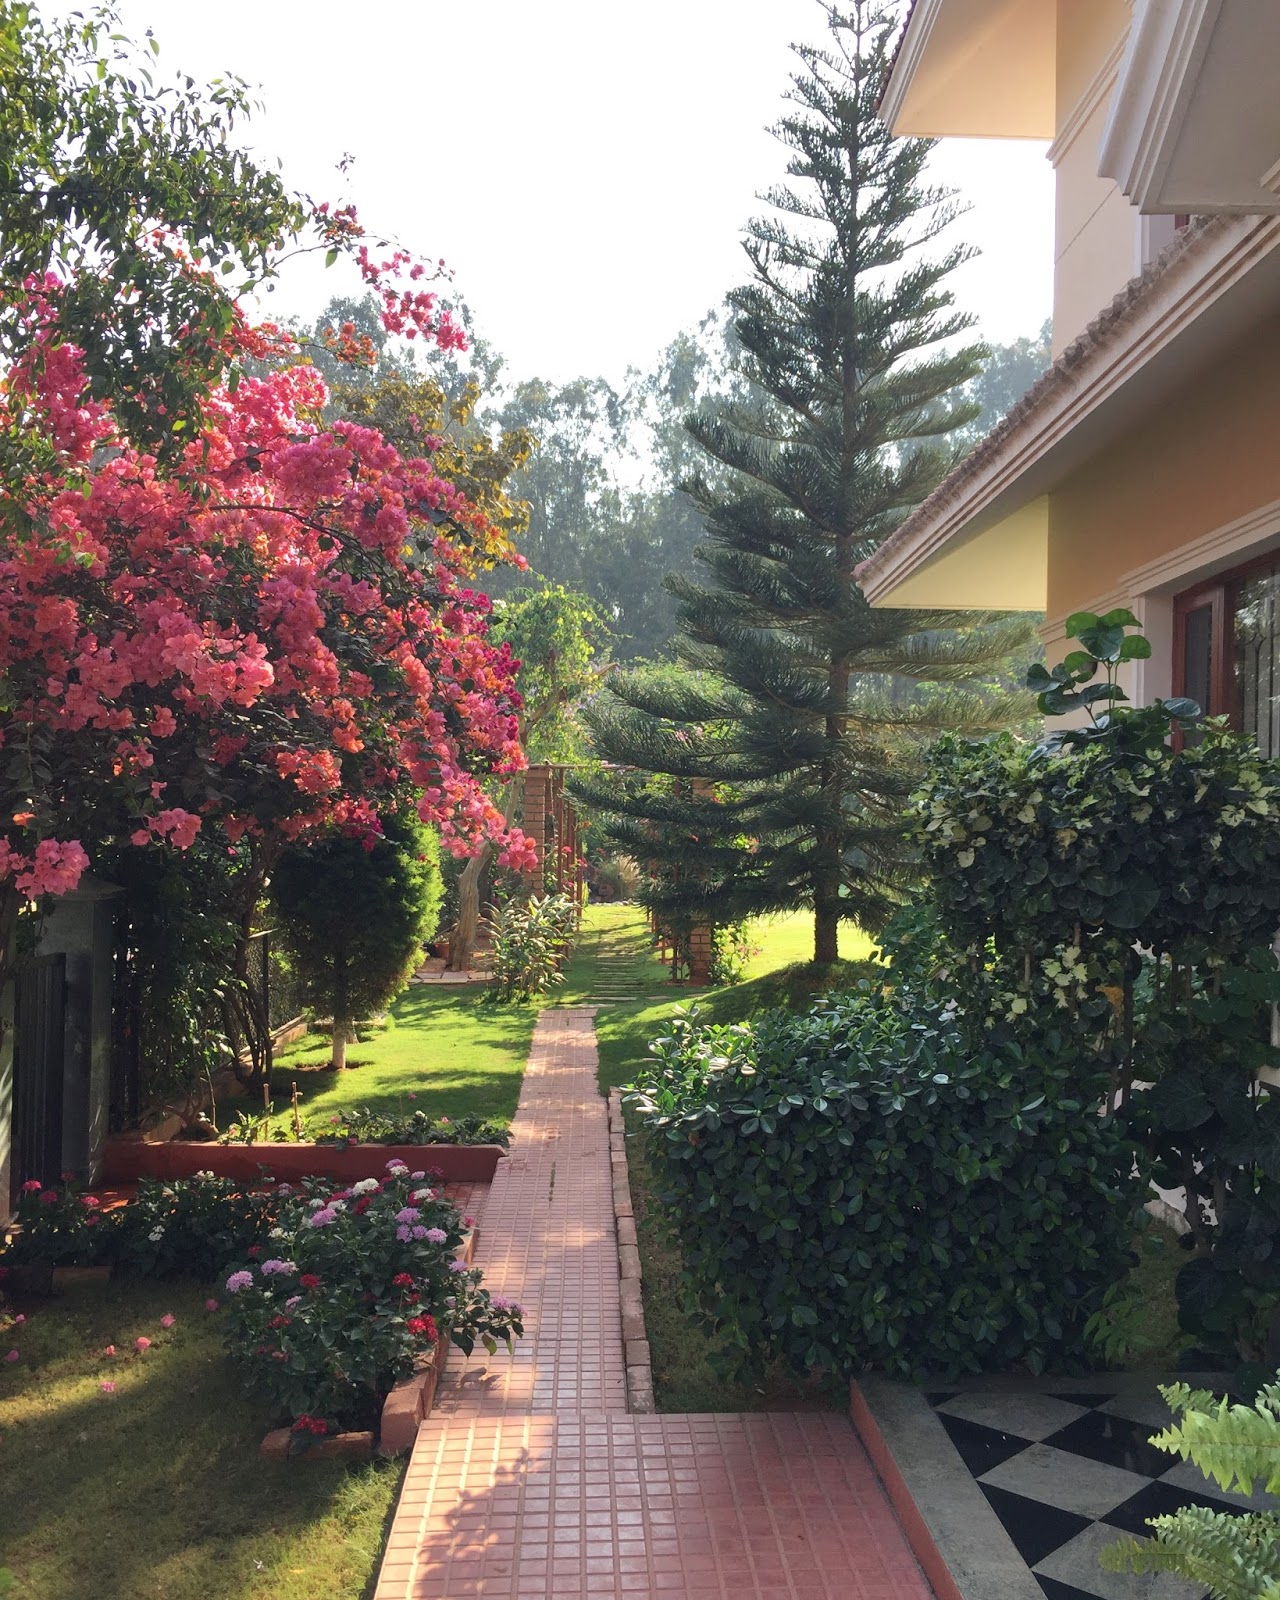 red house garden: a south indian garden